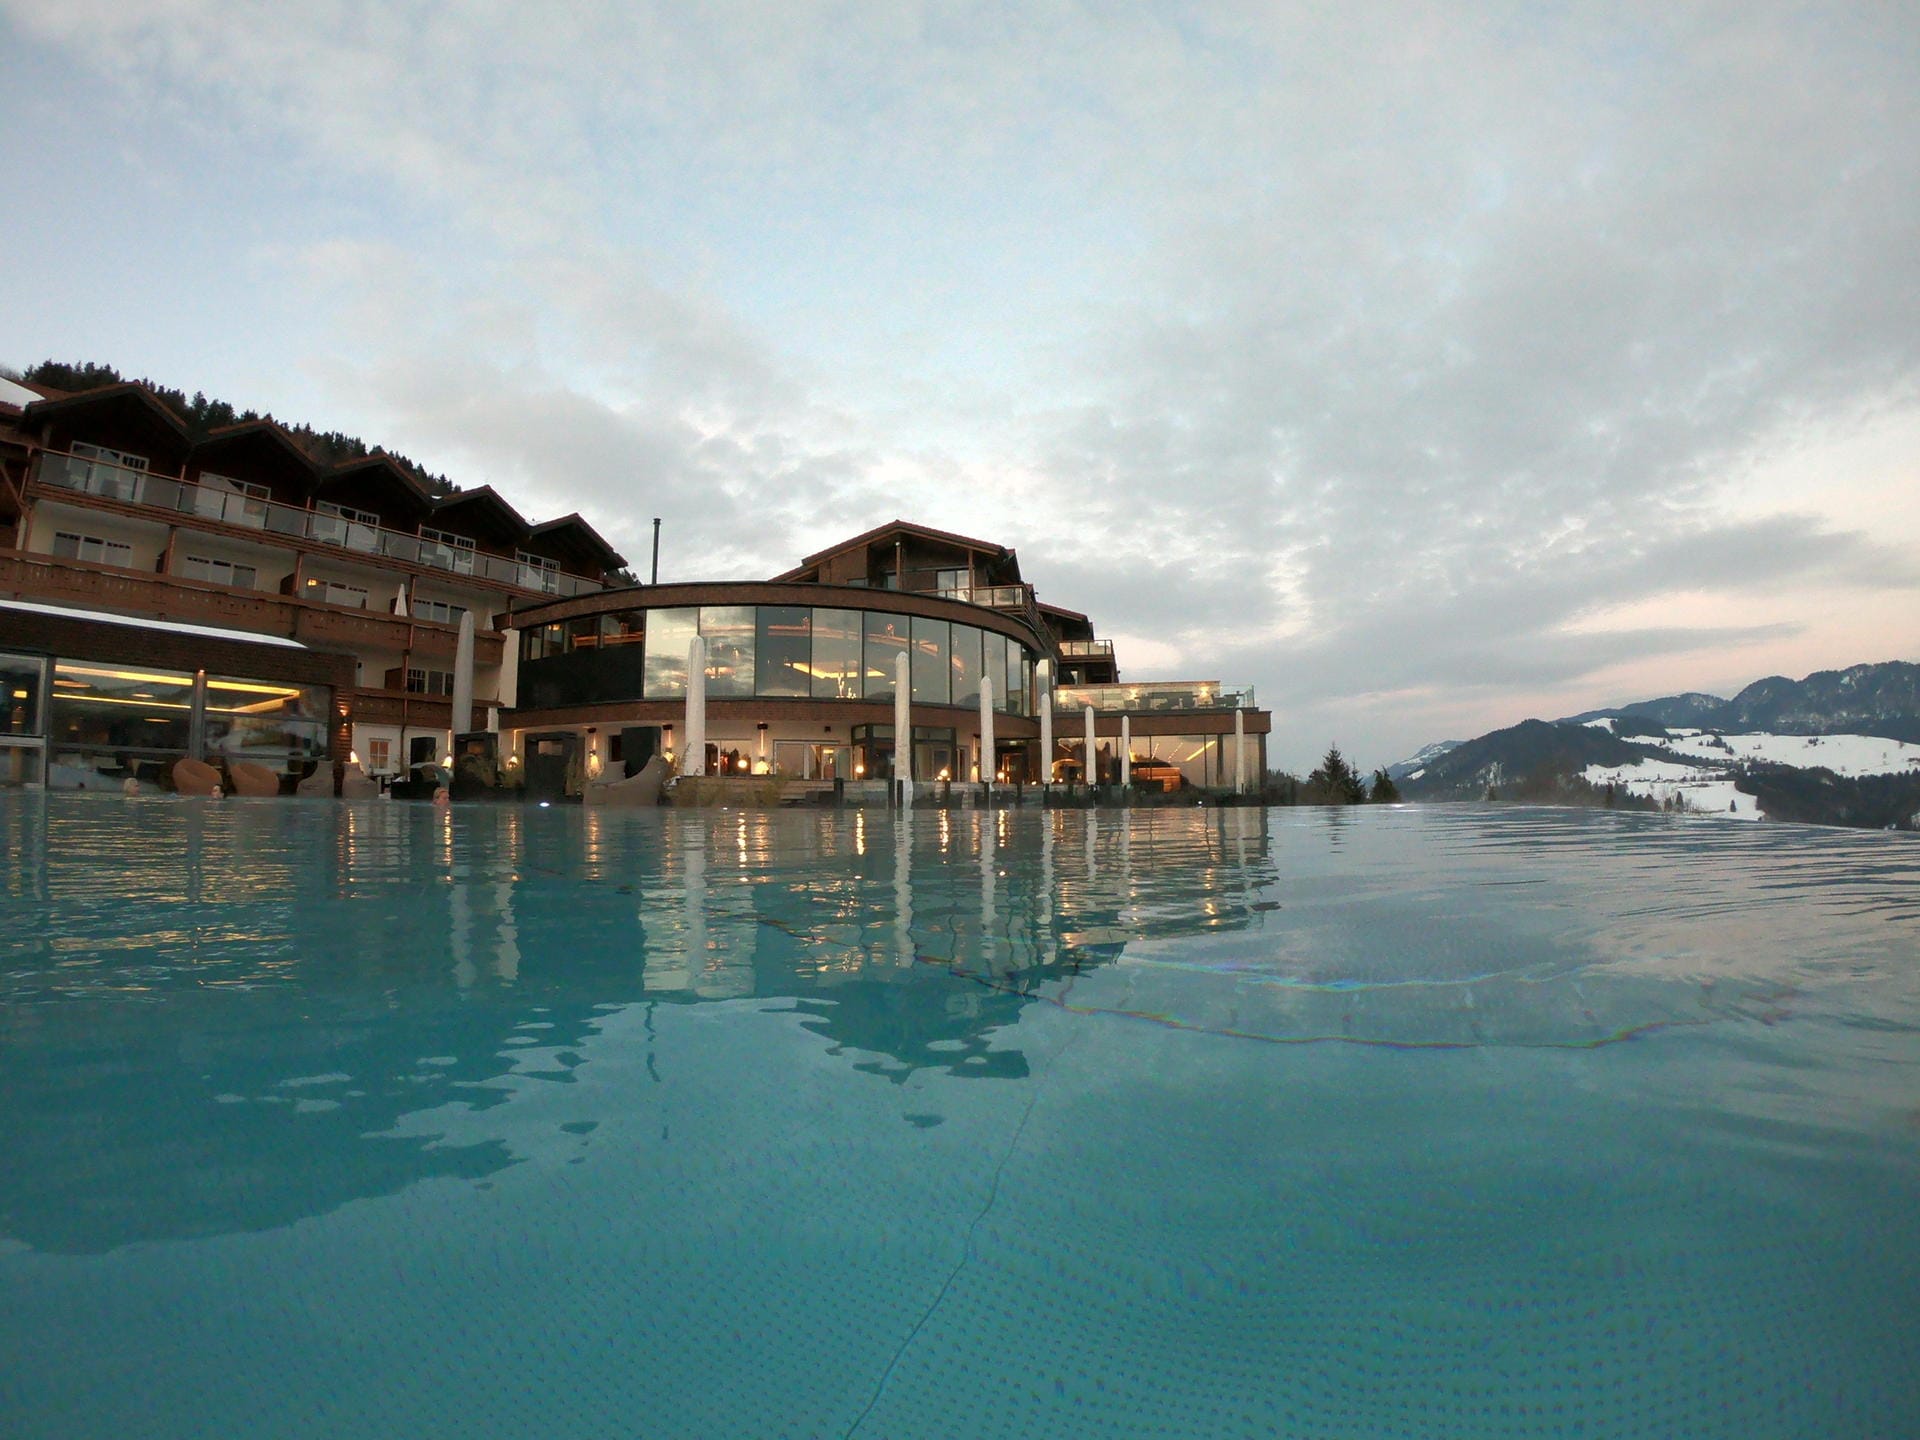 Bergkristall: Das familiengeführte Hotel bietet neben Wellnessmöglichkeiten auch geführte Wanderungen und ein breites Sportangebot an.